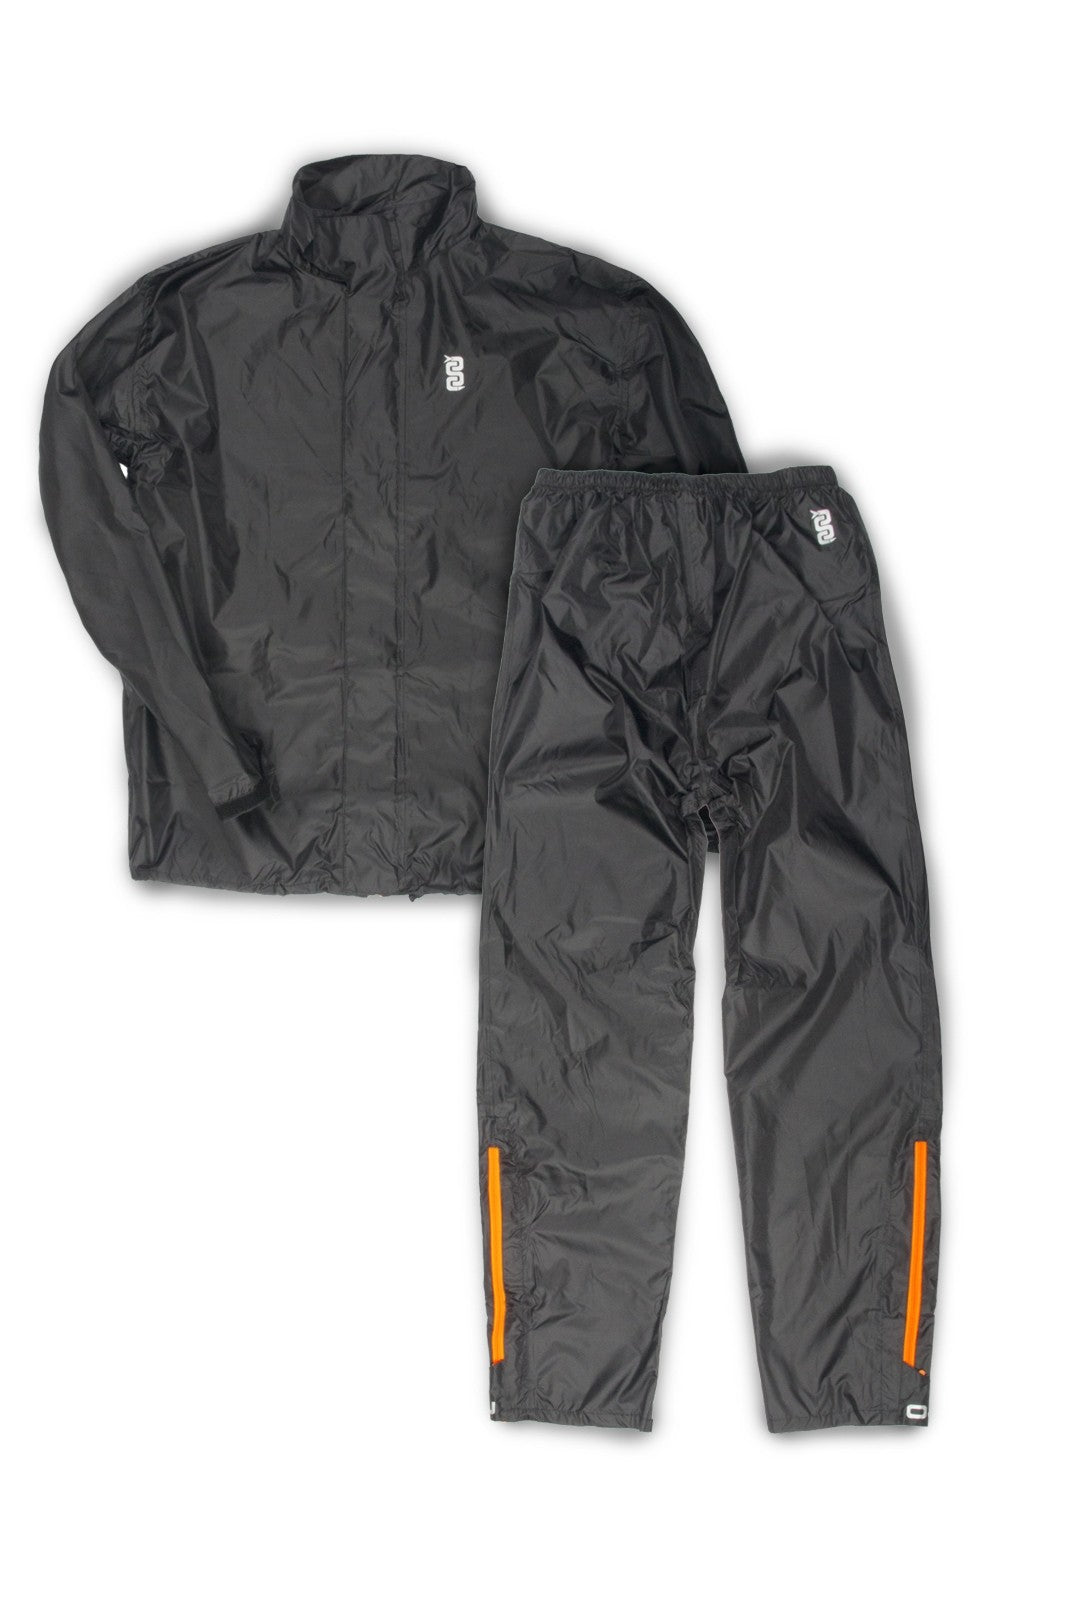 Antipioggia moto OJ SYSTEM SET NERO leggero compatto giacca e pantalon –